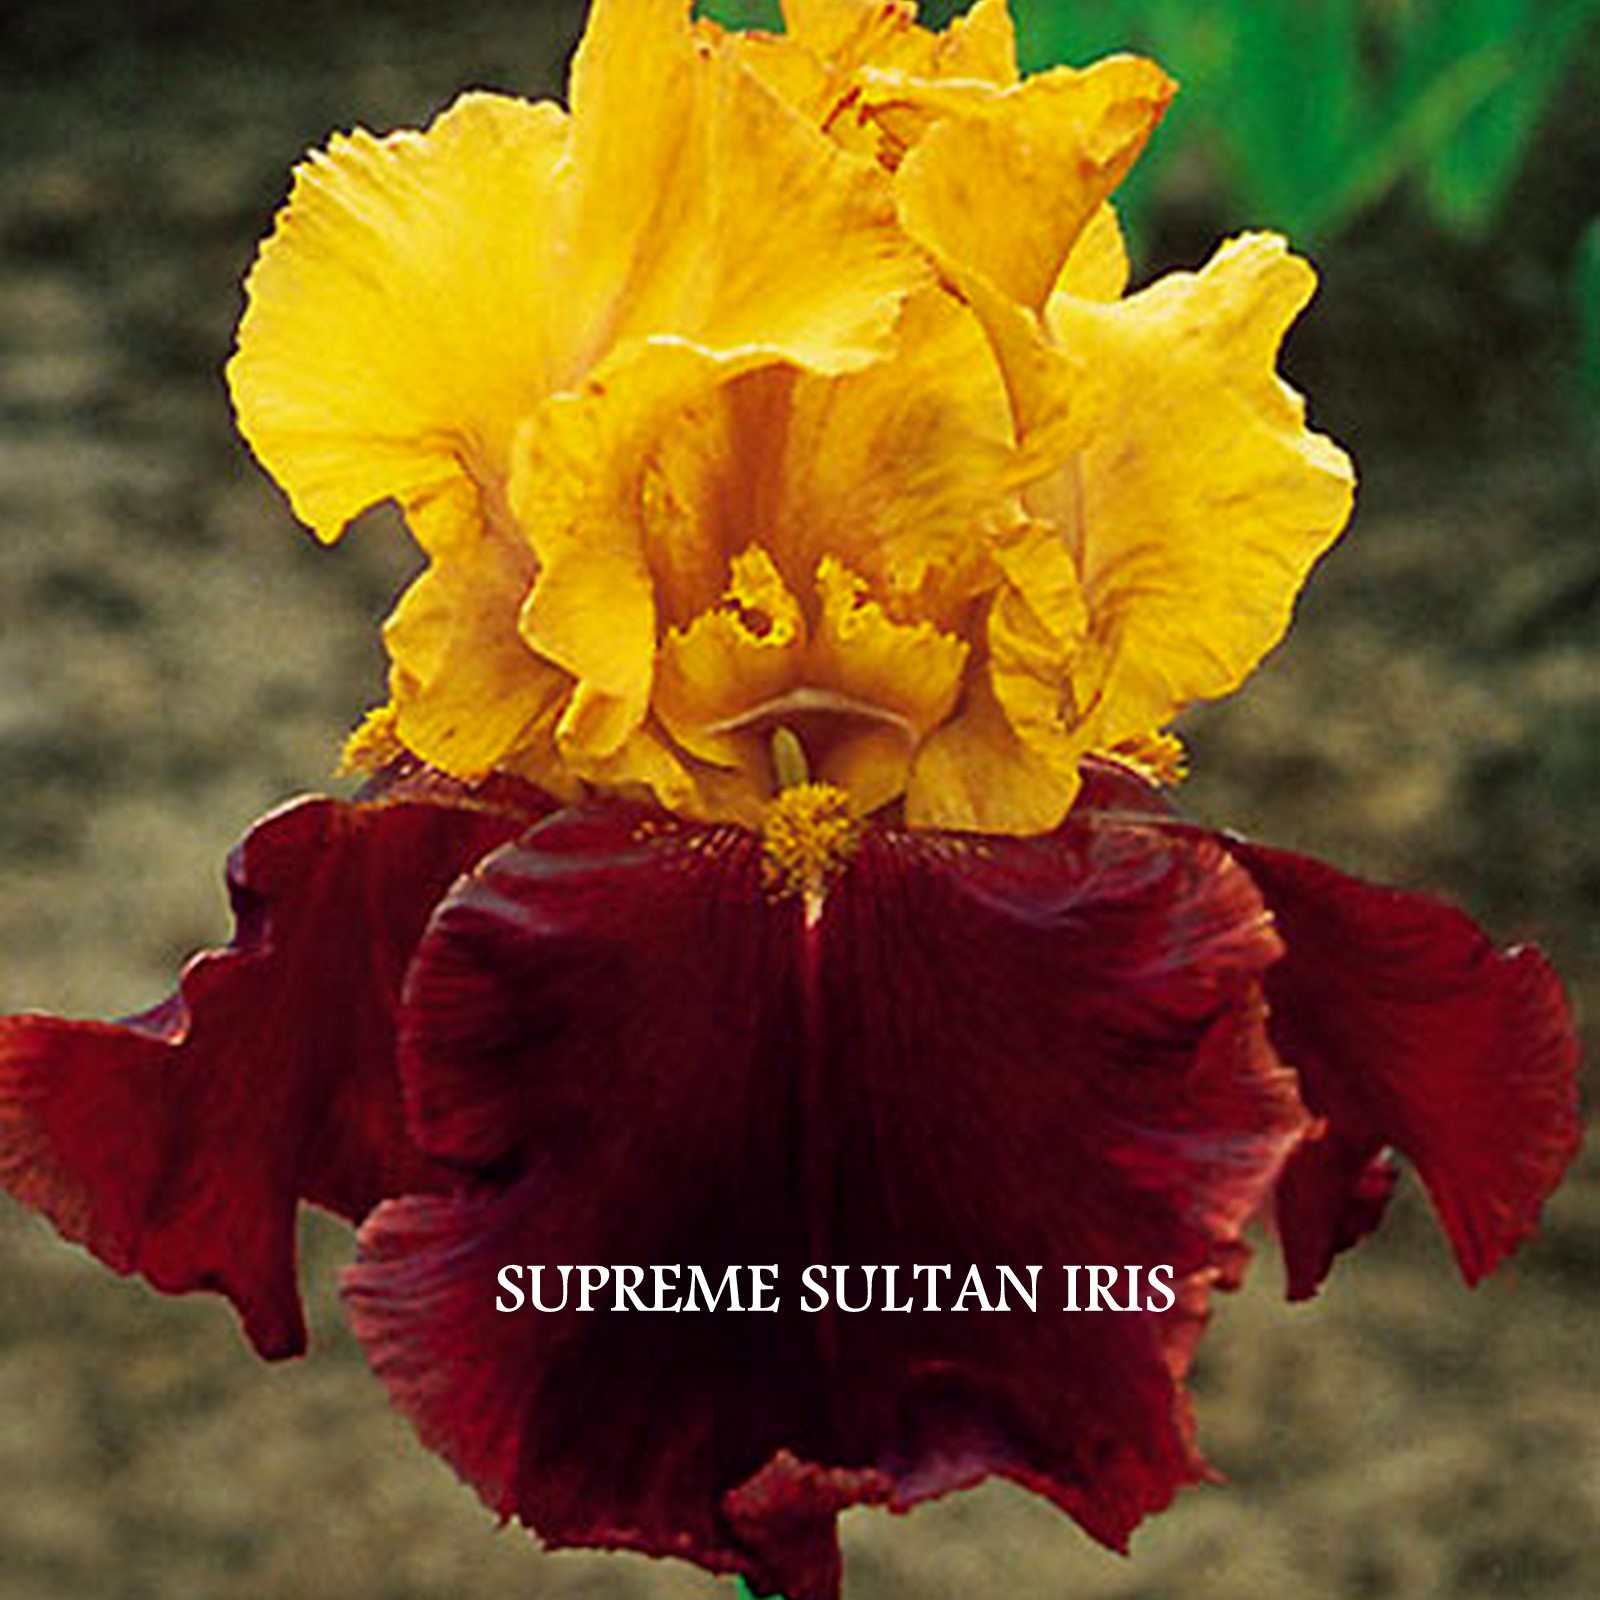 Supreme Sultan Iris